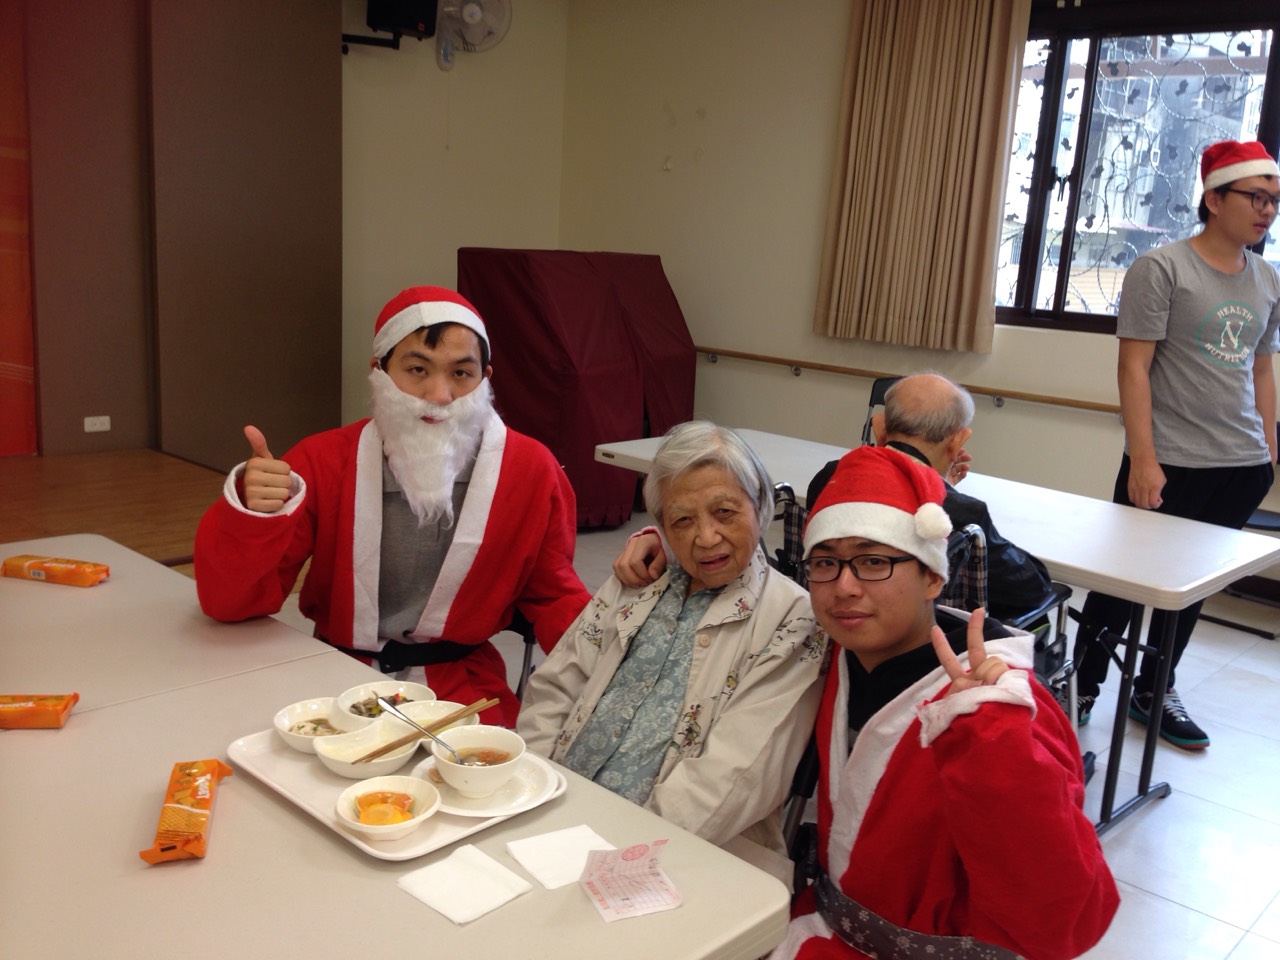 嘉藥保健營養系學生製作養生聖誕大餐 與長者同樂-聖誕節